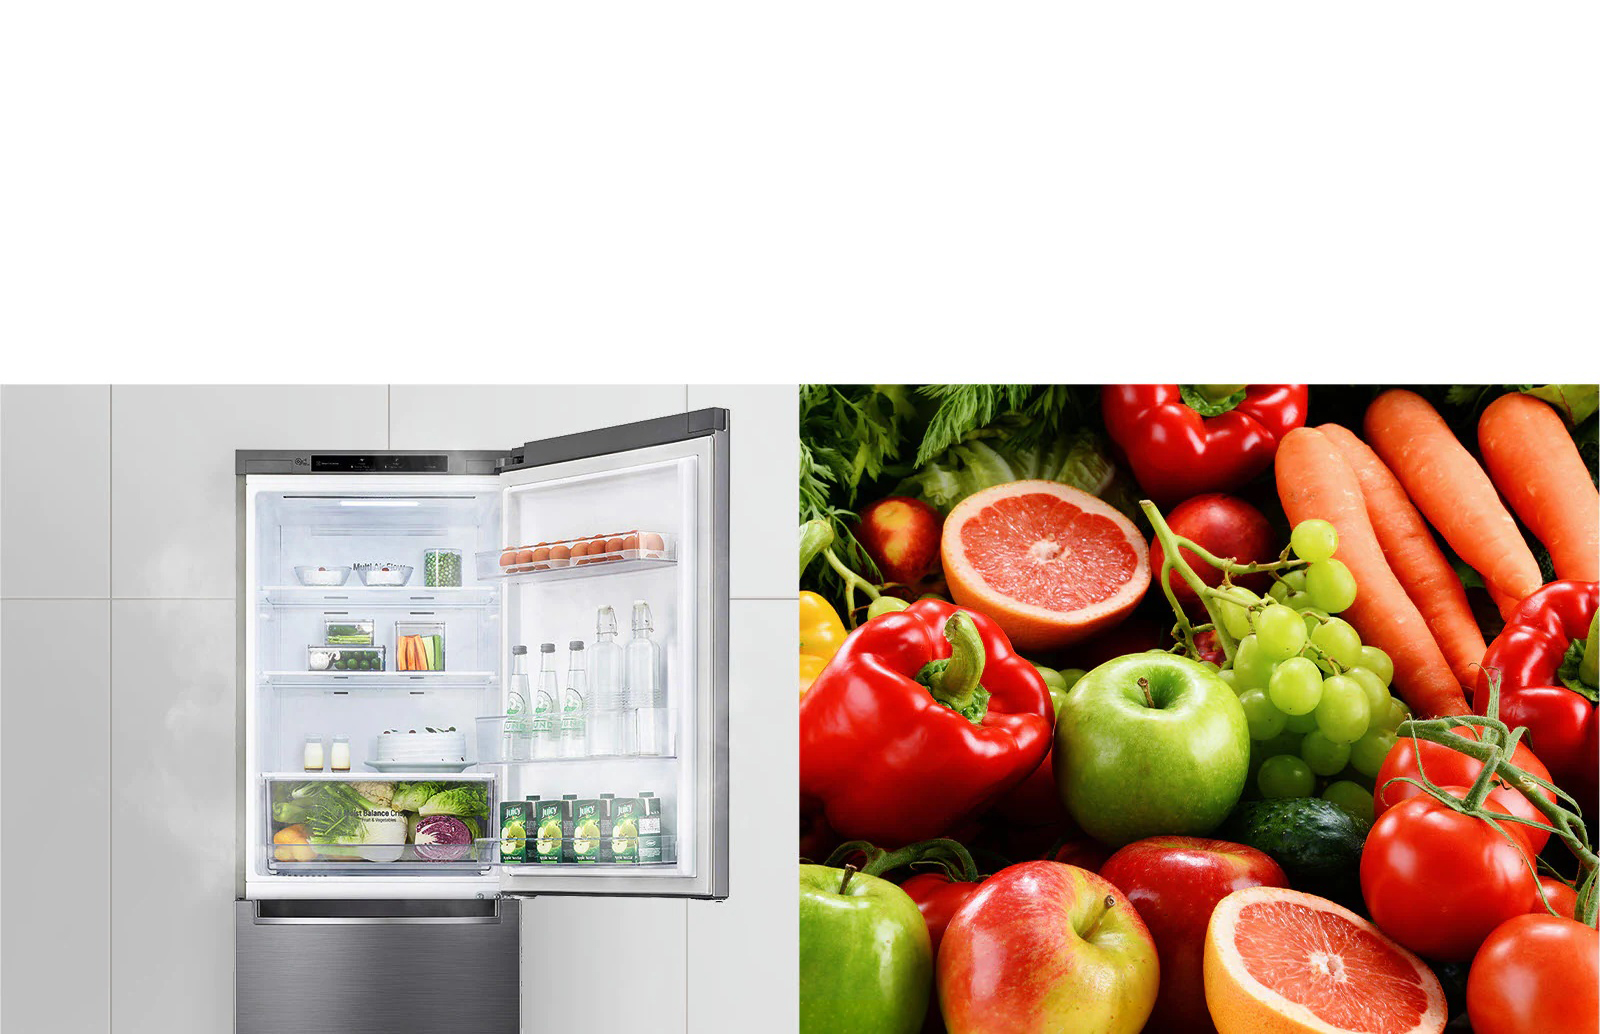 La première image montre le réfrigérateur rempli de boissons et de produits avec la porte du haut ouverte. La deuxième image montre des fruits et des légumes aux couleurs vives et brillantes dans un groupe.